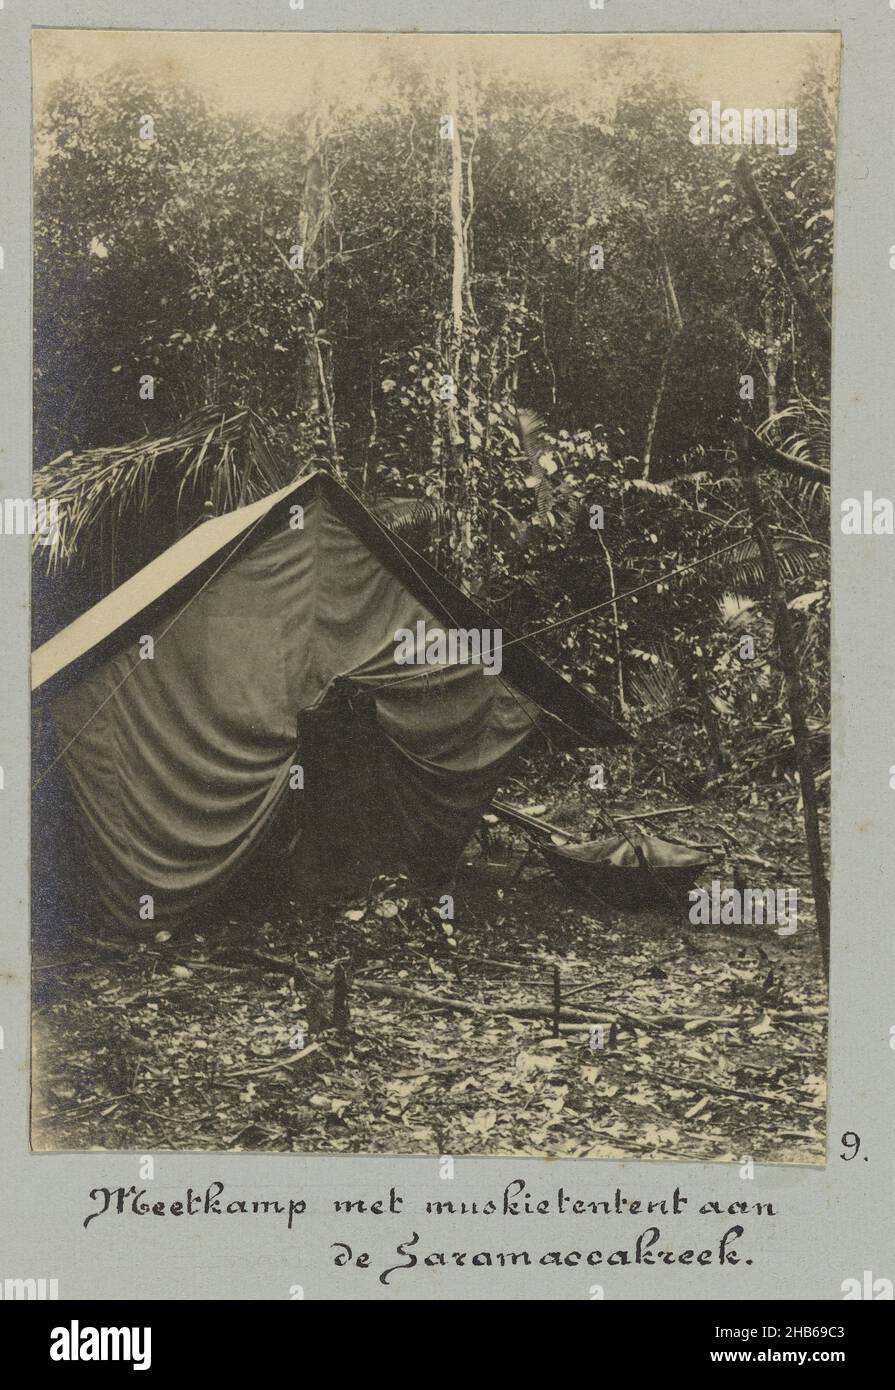 Messcamp mit Moskitozelt am Saramacca Creek (Titel auf Objekt), Ein mit einem Moskitonetz bedecktes Zelt, beim Messcamp im Dschungel am Little Saramacca River (Saramacca Creek). Teil des Fotoalbums Souvenir de Voyage (Teil 1), über das Leben der Familie Doijer in und um die Plantage Ma Retraite in Suriname in den Jahren 1906-1913., Hendrik Doijer (zugeschrieben), Suriname, 1906 - 1913, fotografische Unterstützung, Silbergelatine-Druck, Höhe 112 mm × Breite 80 mm Stockfoto